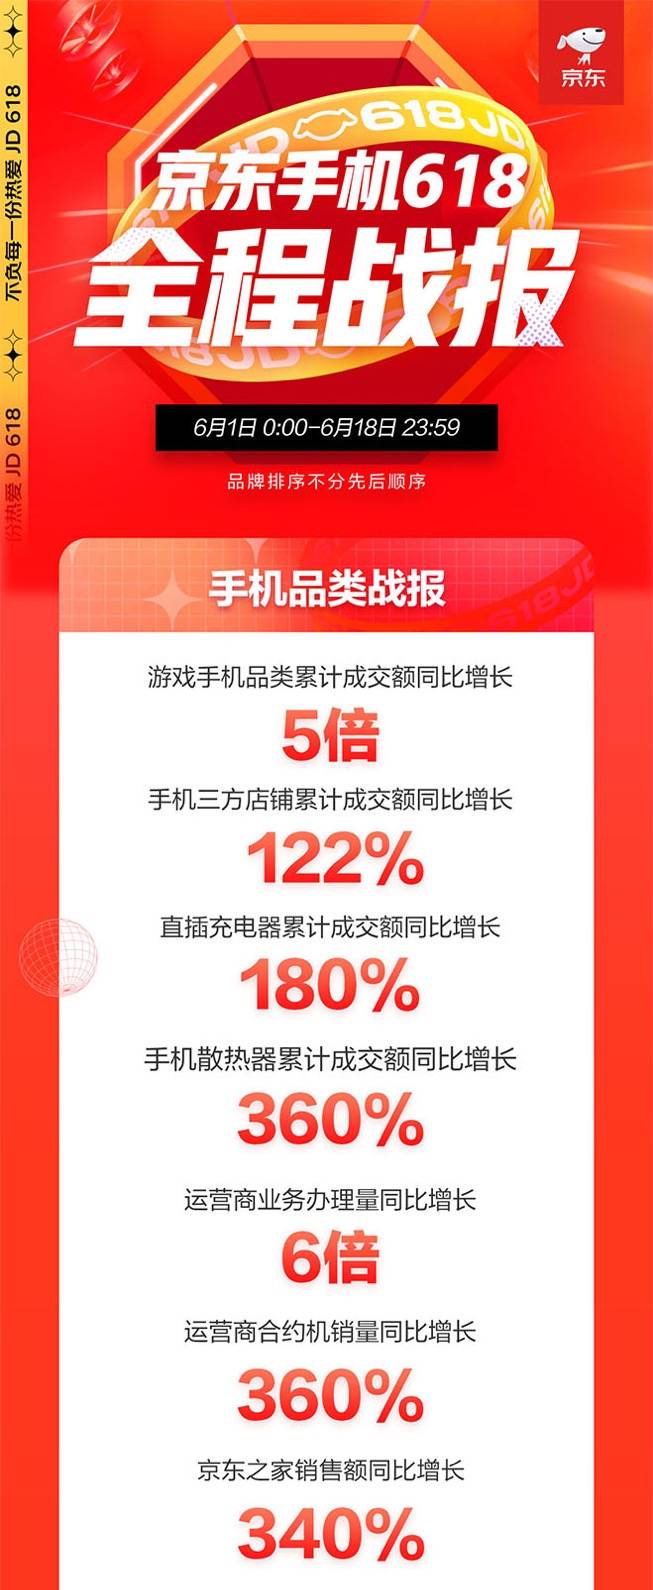 绿色消费营造美好生活 京东618手机终极战报以旧换新同比增长353%